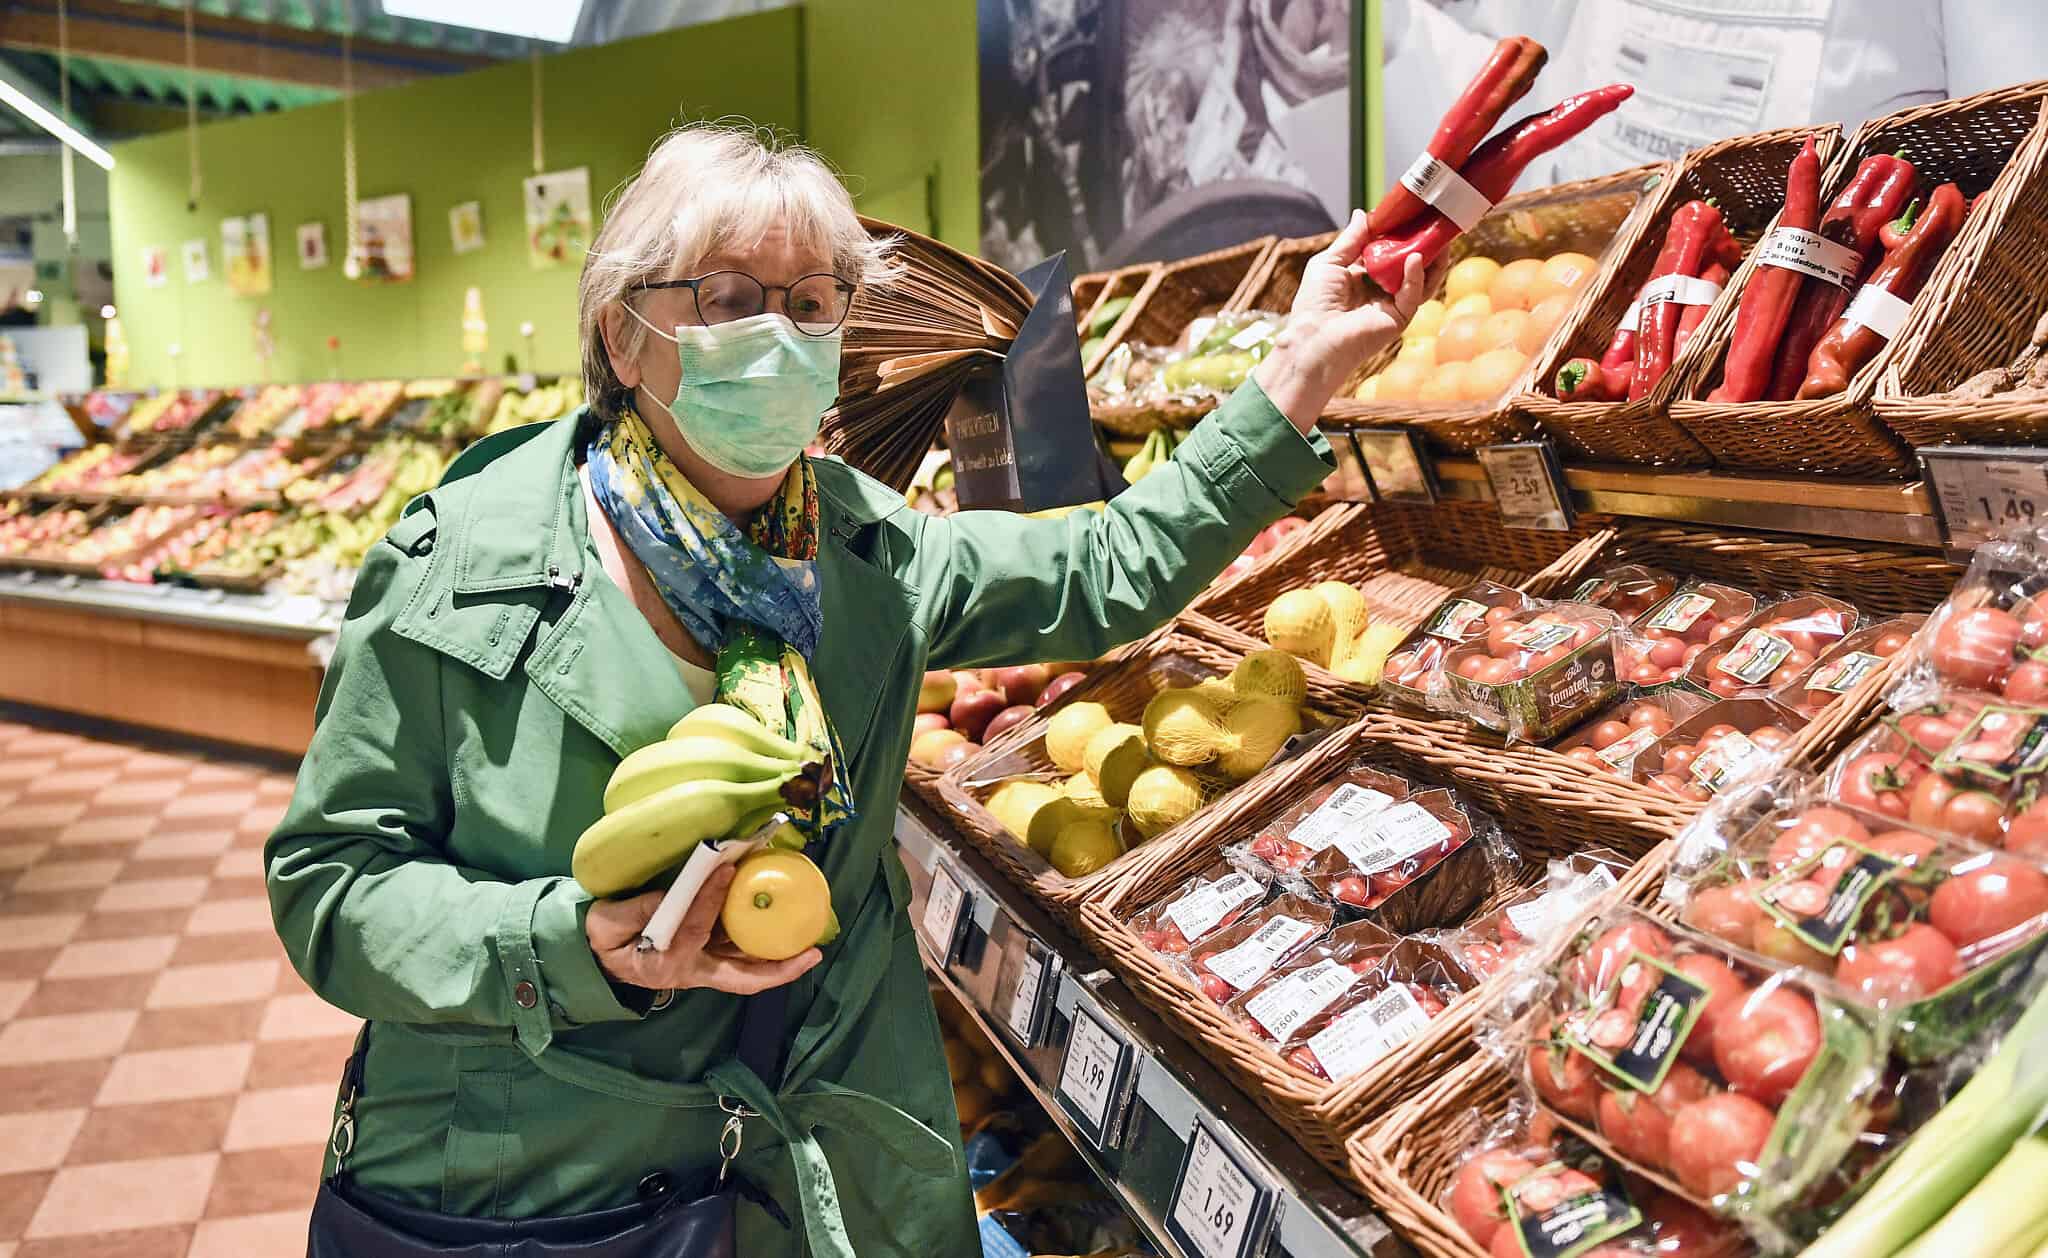 משבר הקורונה: אישה מבוגרת מצטיידת במזון בגרמניה, מרץ 2020 (צילום: AP Photo/Martin Meissner)